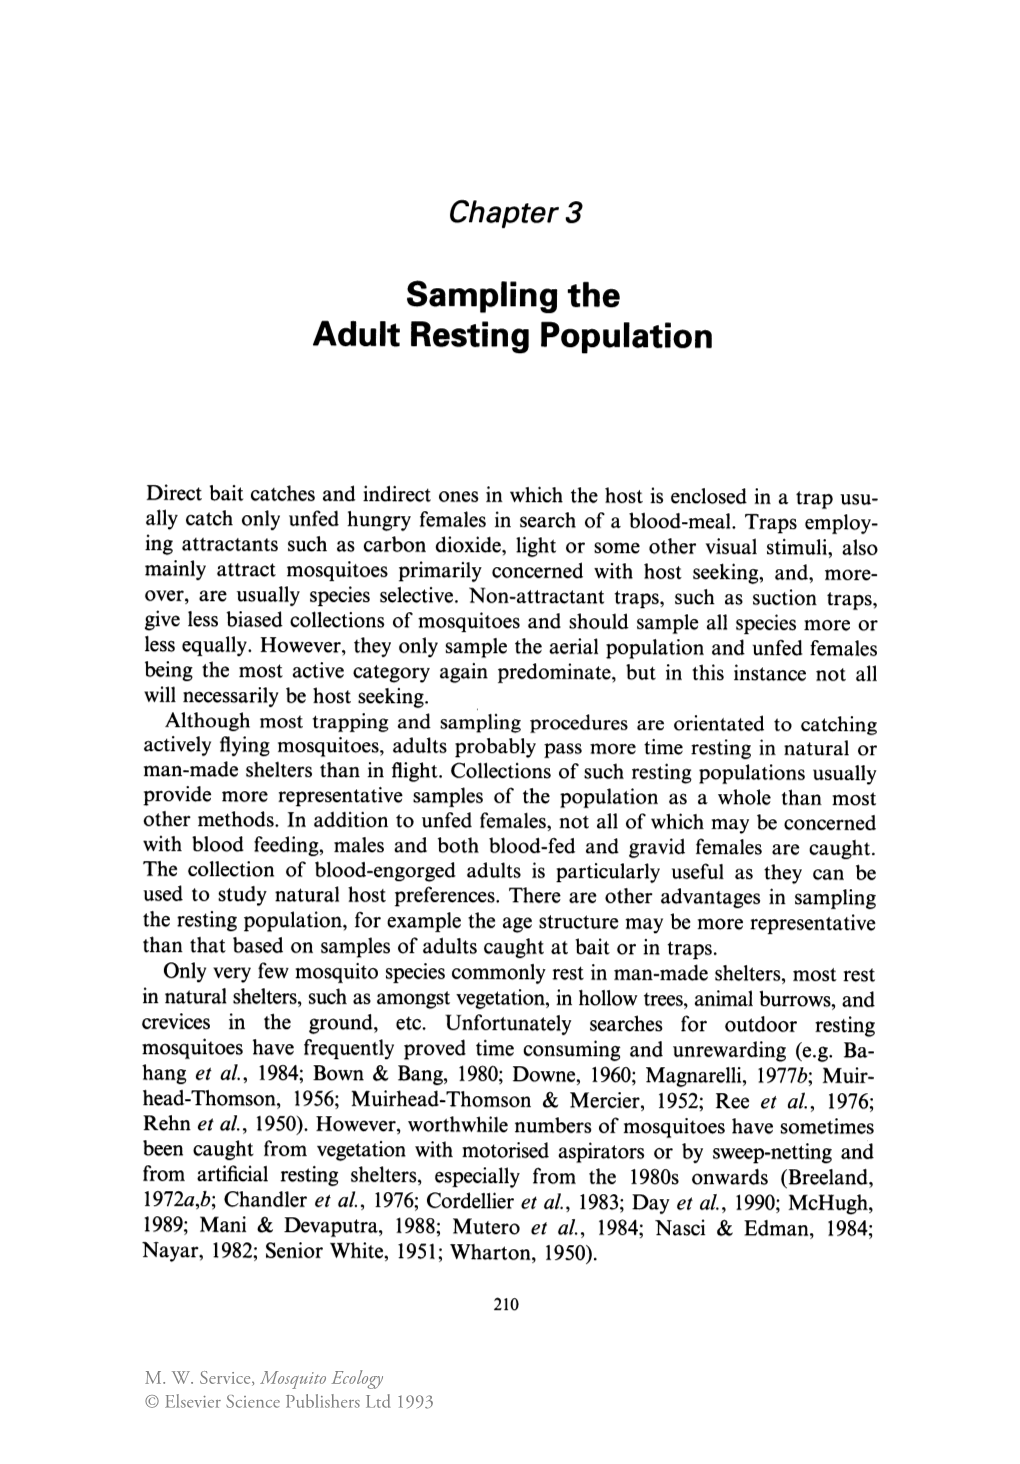 Sampling the Adult Resting Population